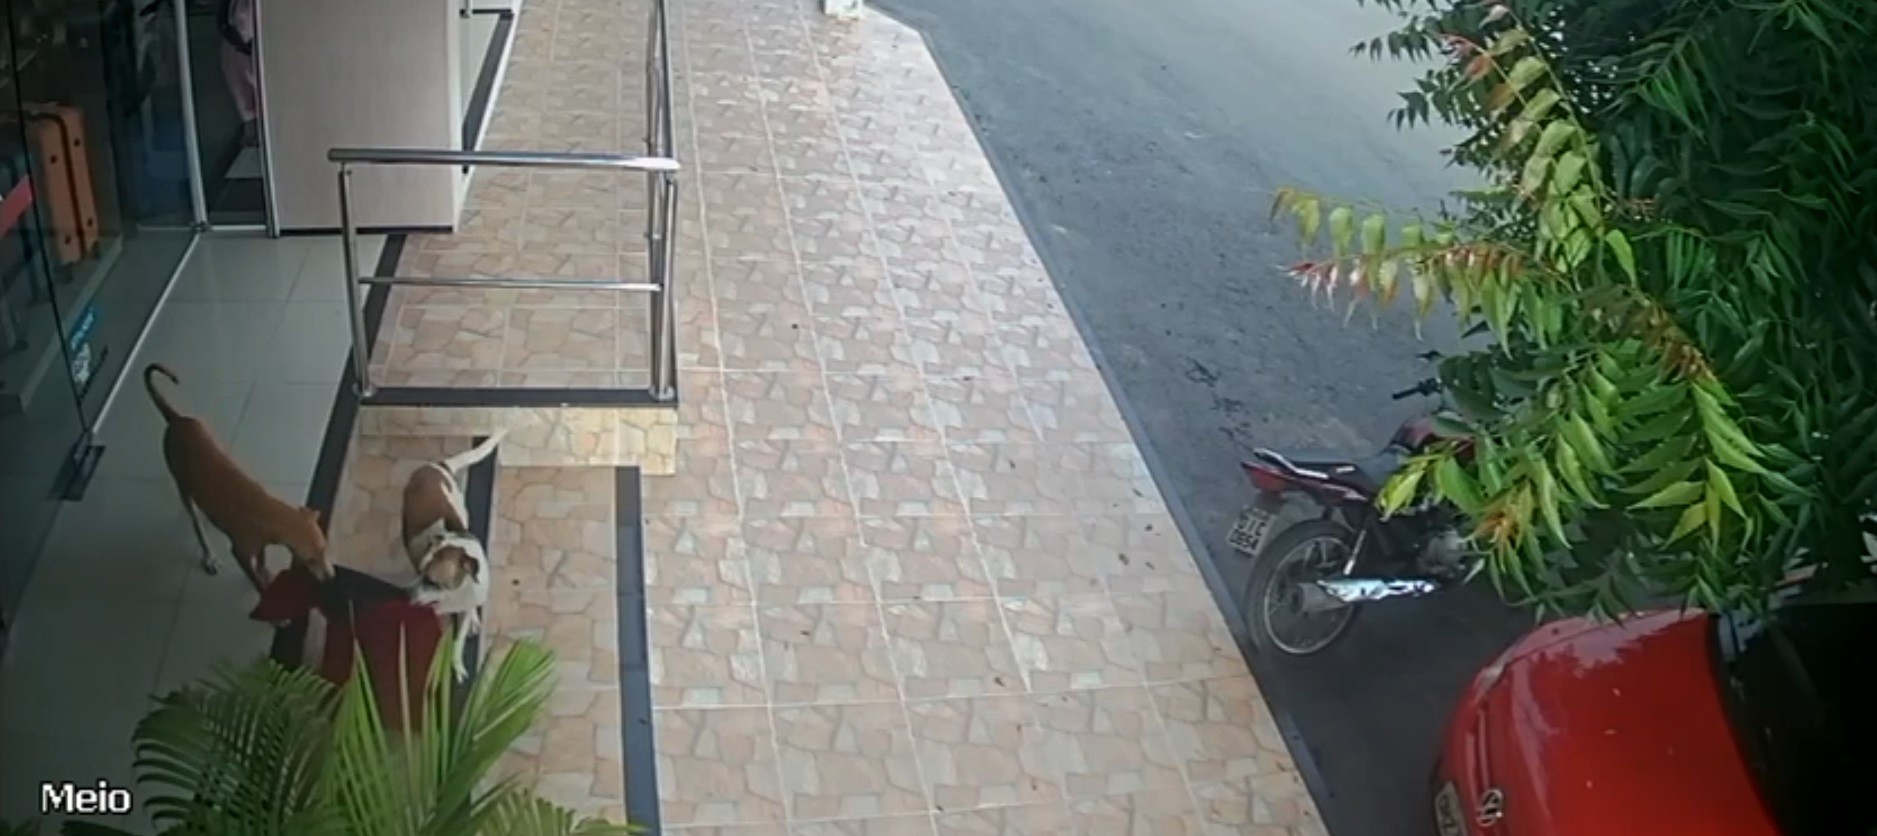 Vira-latas ‘furtam’ tapete de loja de roupas e são flagrados por câmeras de segurança, no Ceará; vídeo